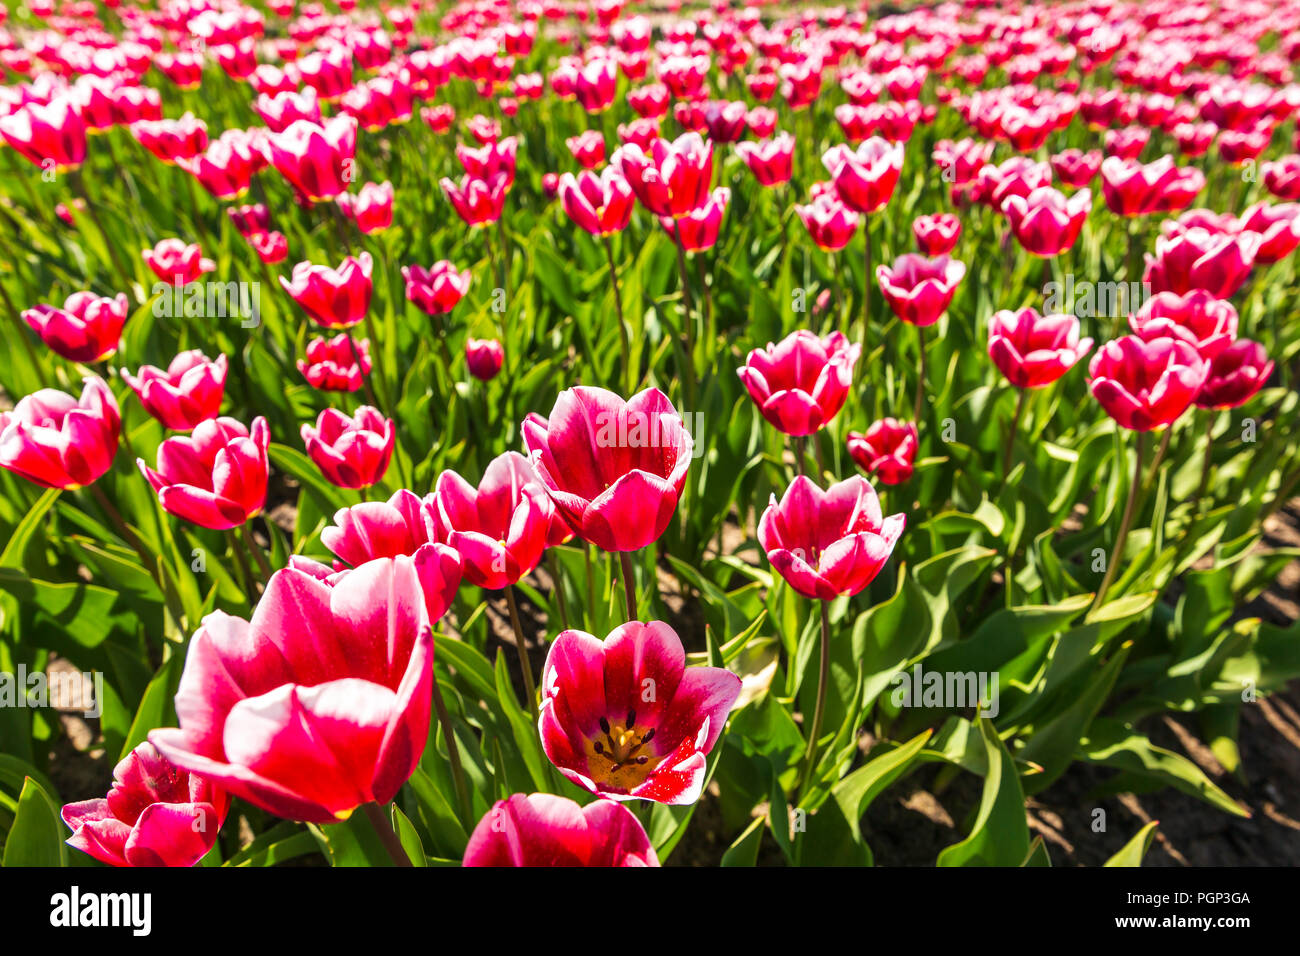 Nahaufnahme von roten und weißen geflammt Tulpen in einer holländischen Tulpen Feld Beet unter einem blauen Himmel während der Saison Frühjahr in Drenthe, Niederlande Stockfoto